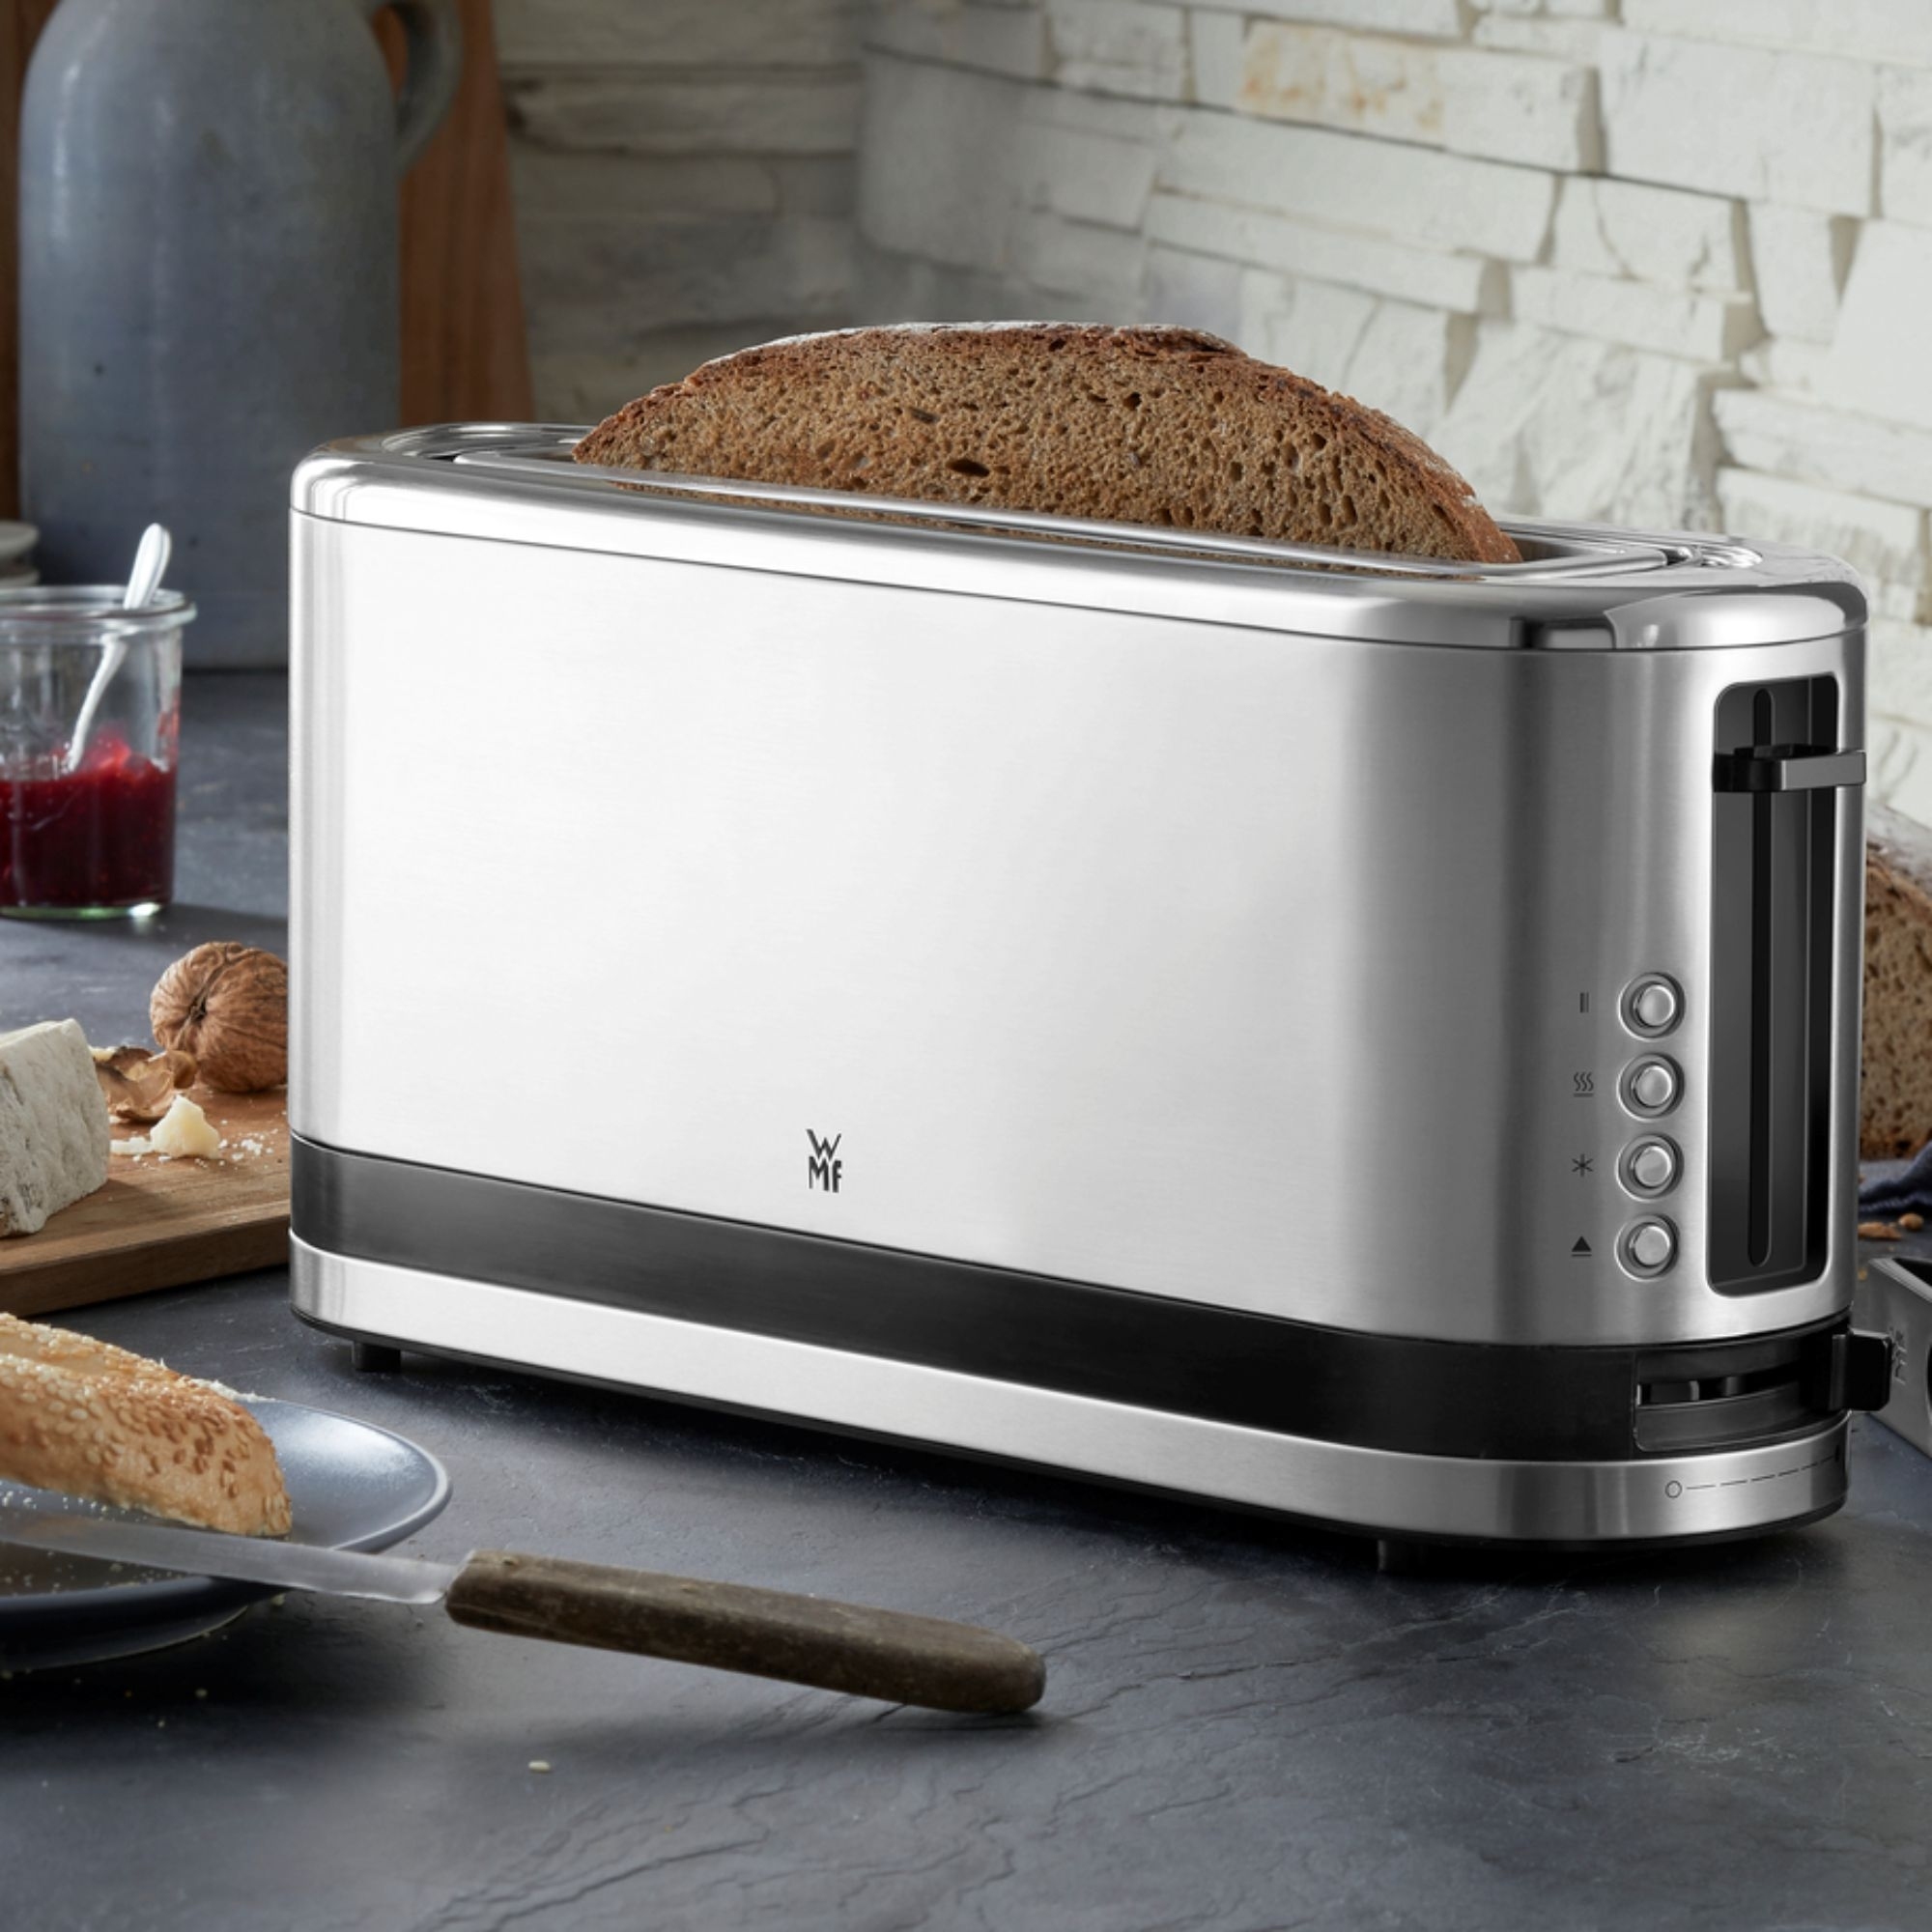 Wmf Kitchenminis long slot toaster